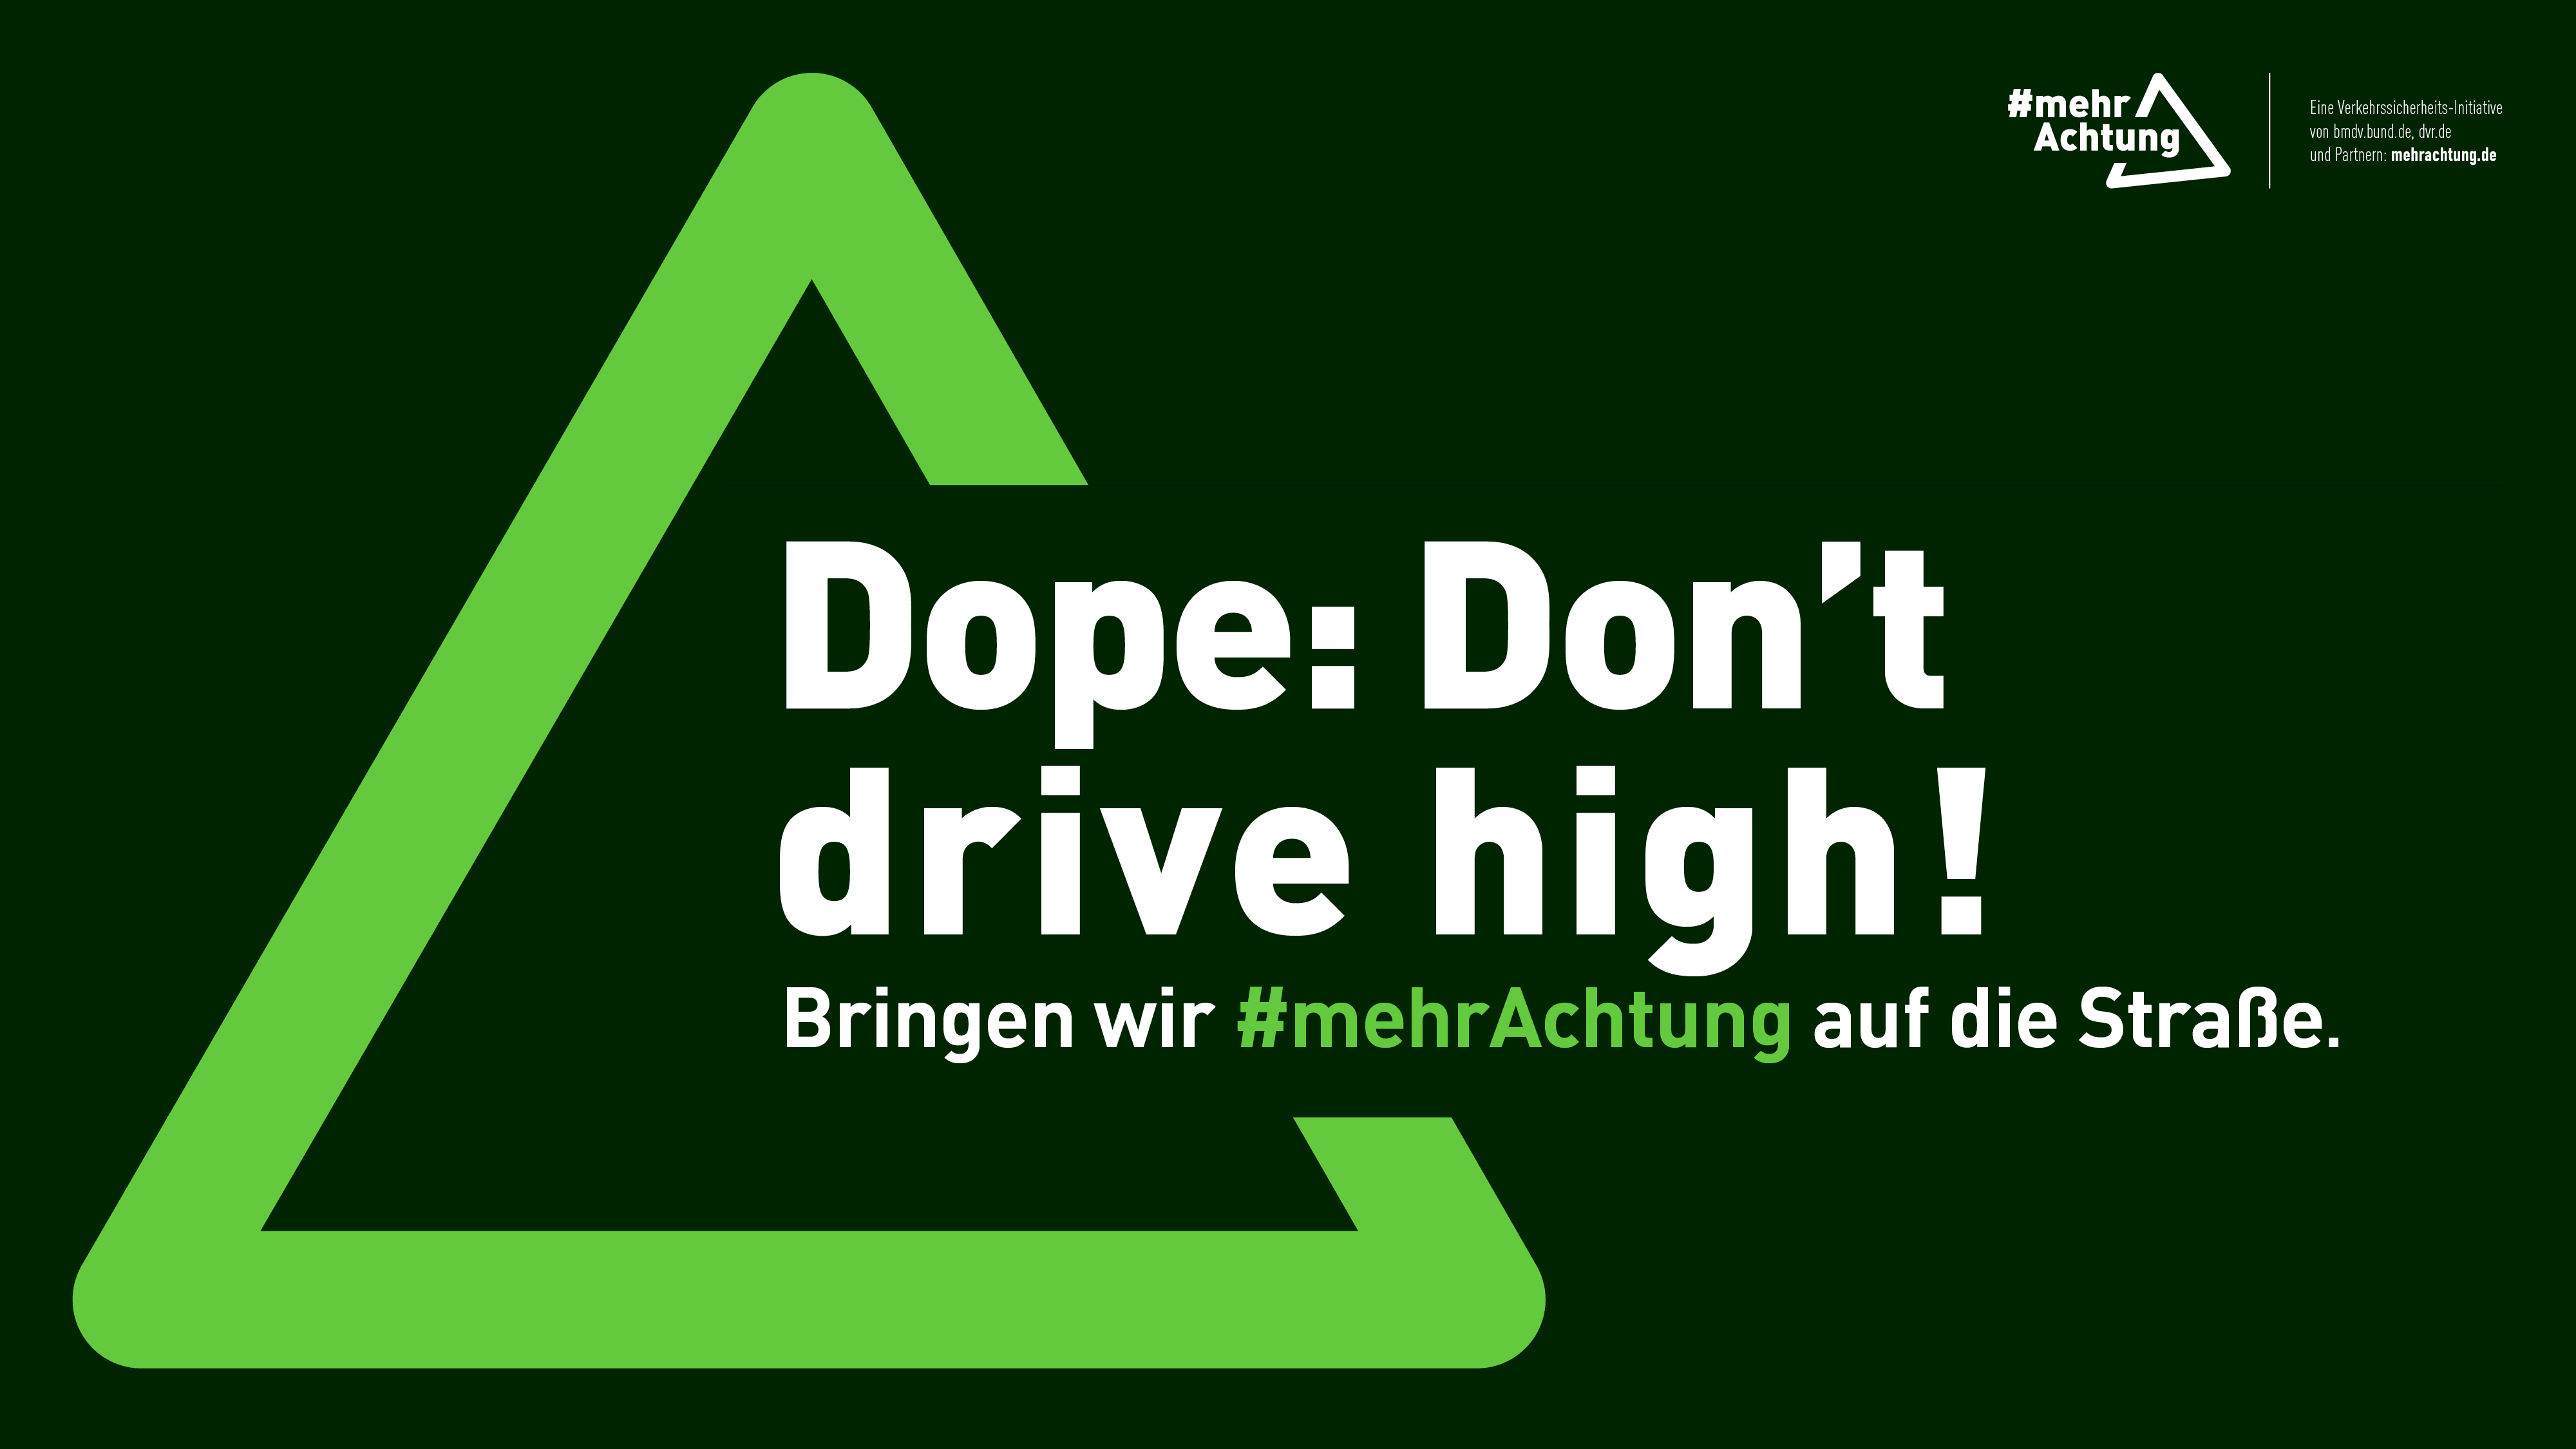 Ein Plakat zeigt die Aufschrift: Dope: Don't drive high! Bringen wir mehr Achtung auf die Straße.